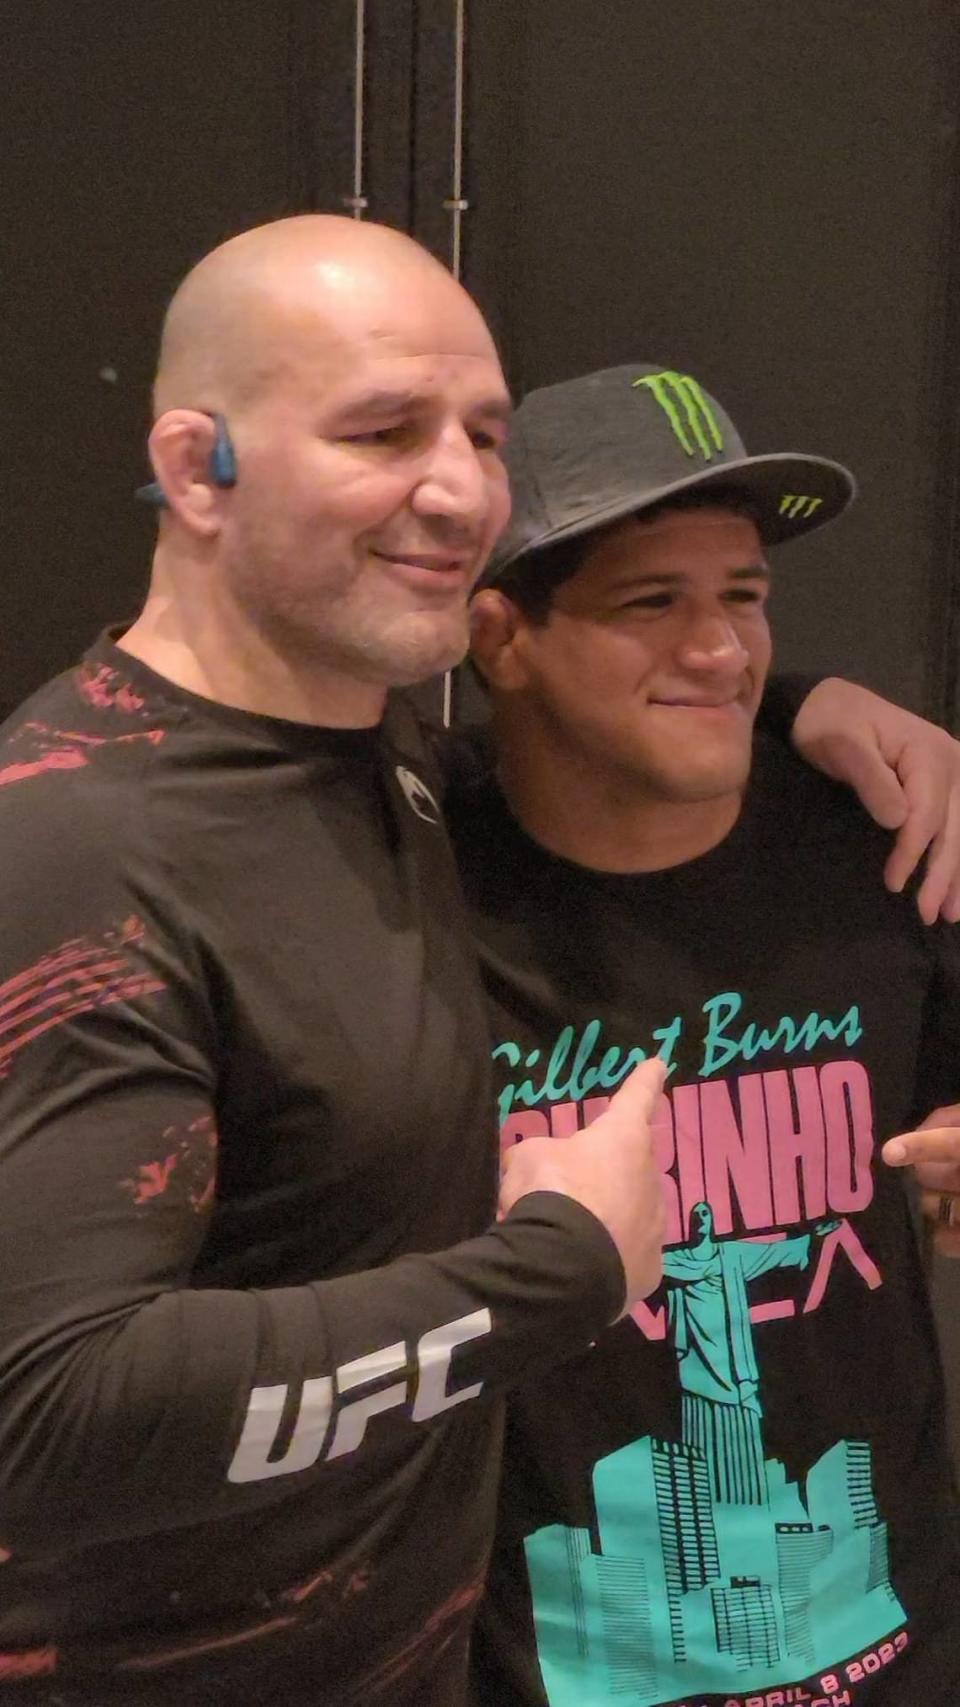 Gilbert Burns (der.) con el excampeón de la UFC Glover Teixeira.